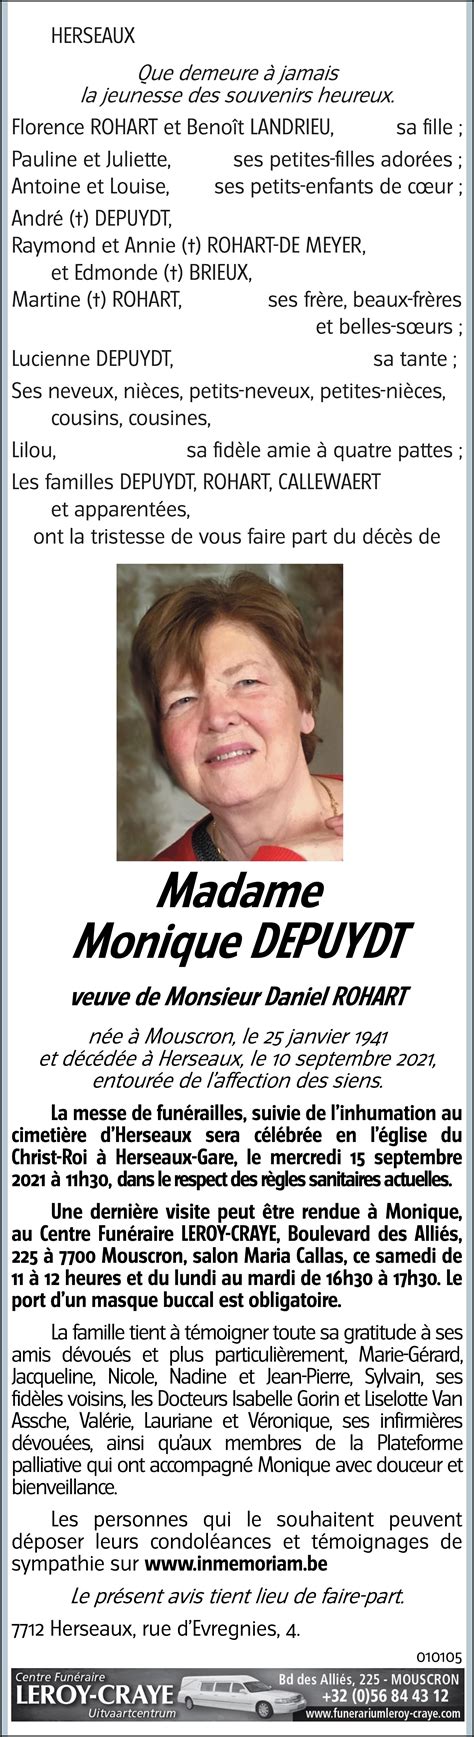 Monique DEPUYDT 10 09 2021 Avis nécrologique lavenir net